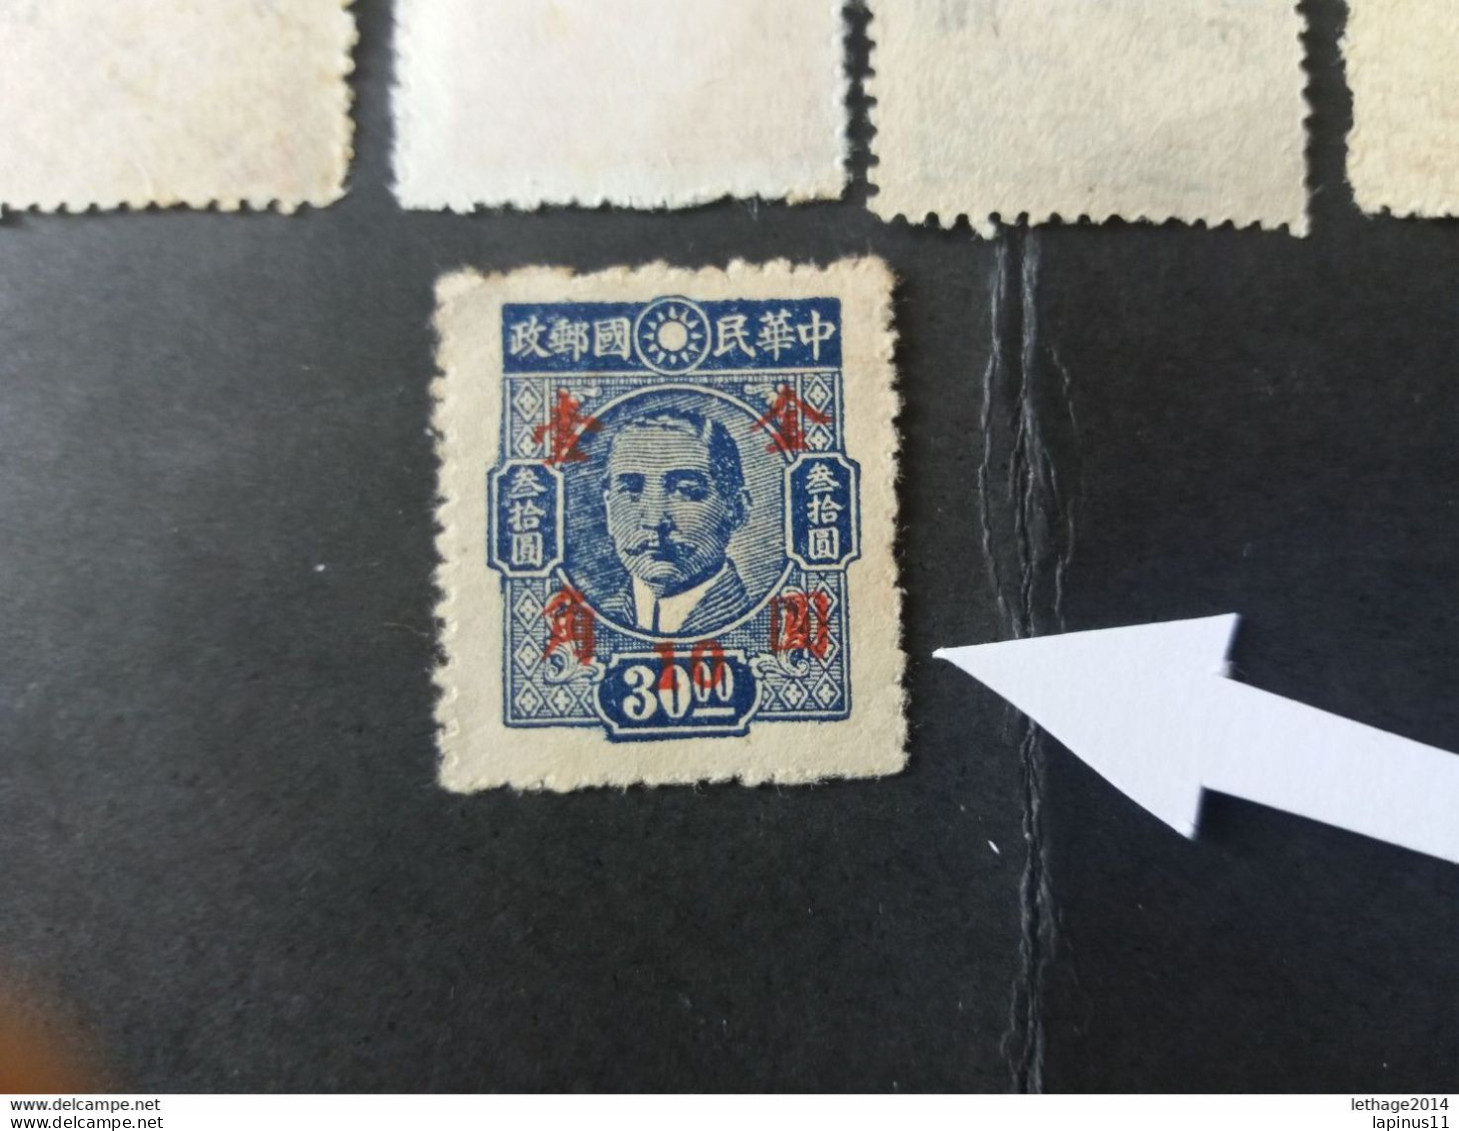 CHINE 中國 CHINA 1949 Dr. Sun Yat-sen New Issued Surcharged 1948 Un Nuovo Contorno Con Fiori Sovraimpressione ERROR DECAL - 1912-1949 Republic